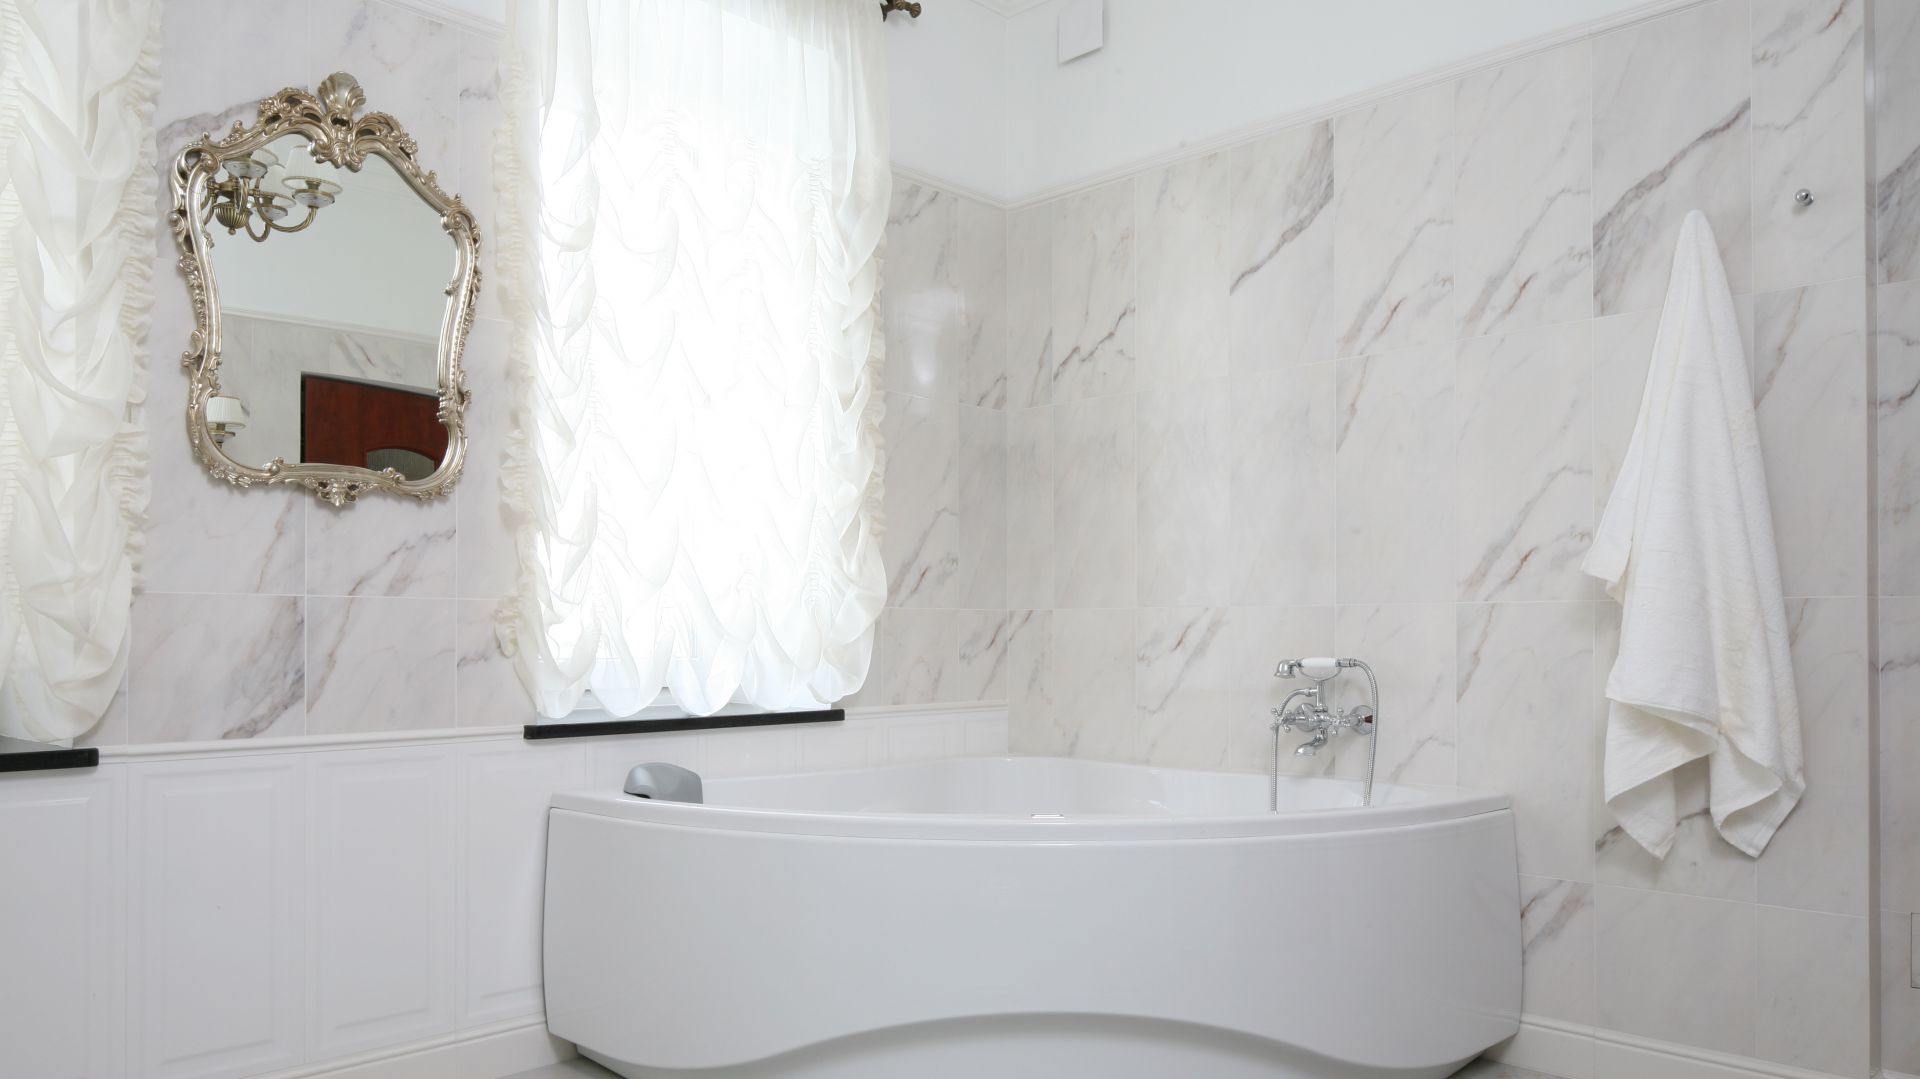 Klasyczna, stylowa łazienka – z narożną wanną i prysznicem